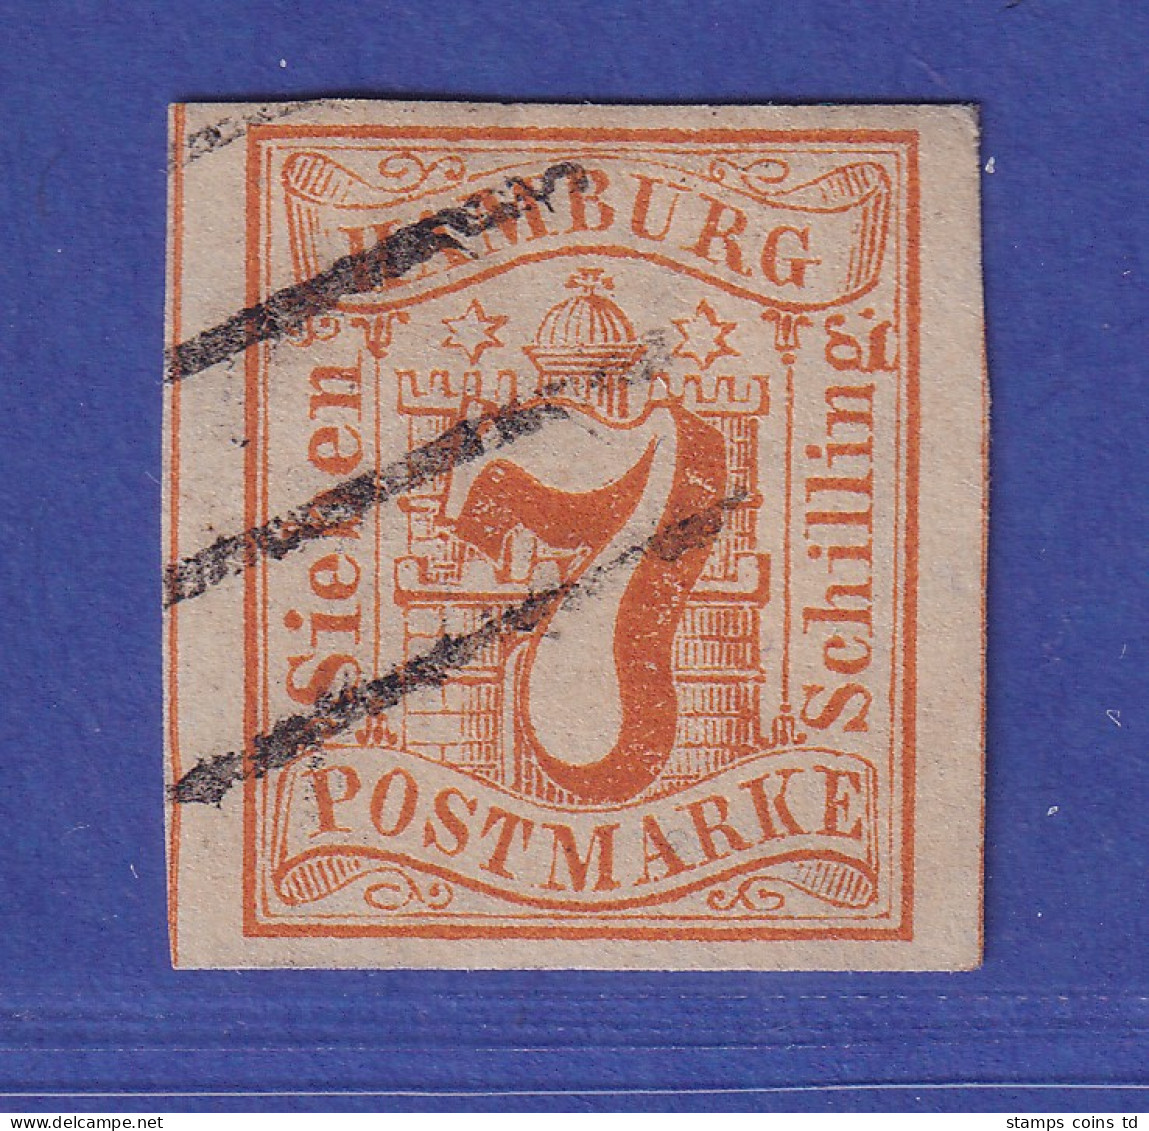 Hamburg 1859 Wertziffer 7 Schillinge Orange Mi.-Nr. 6 Gestempelt Gpr. PFENNINGER - Hambourg